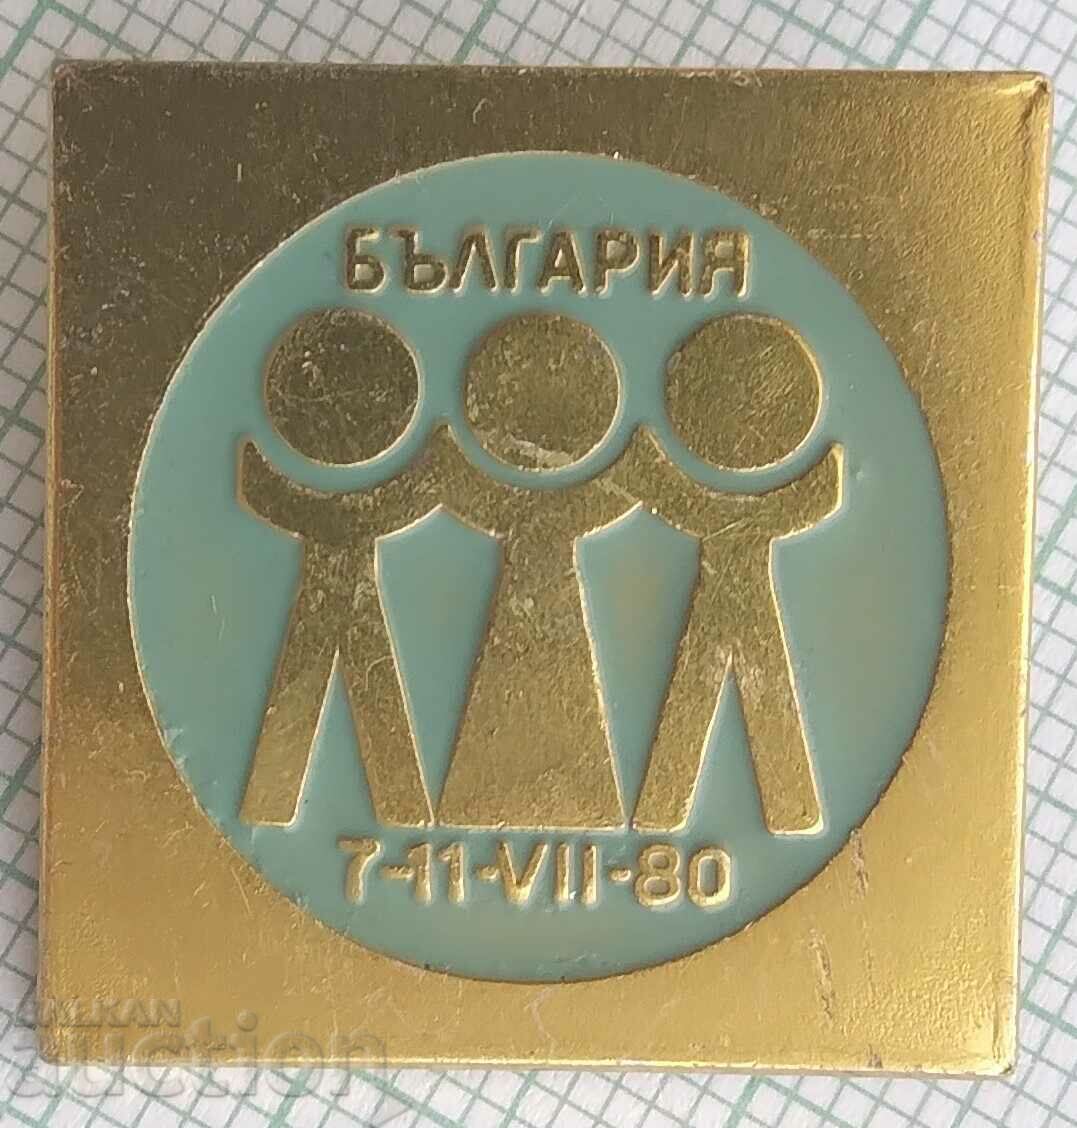 16252 Badge - Bulgaria 7-11 July 1980